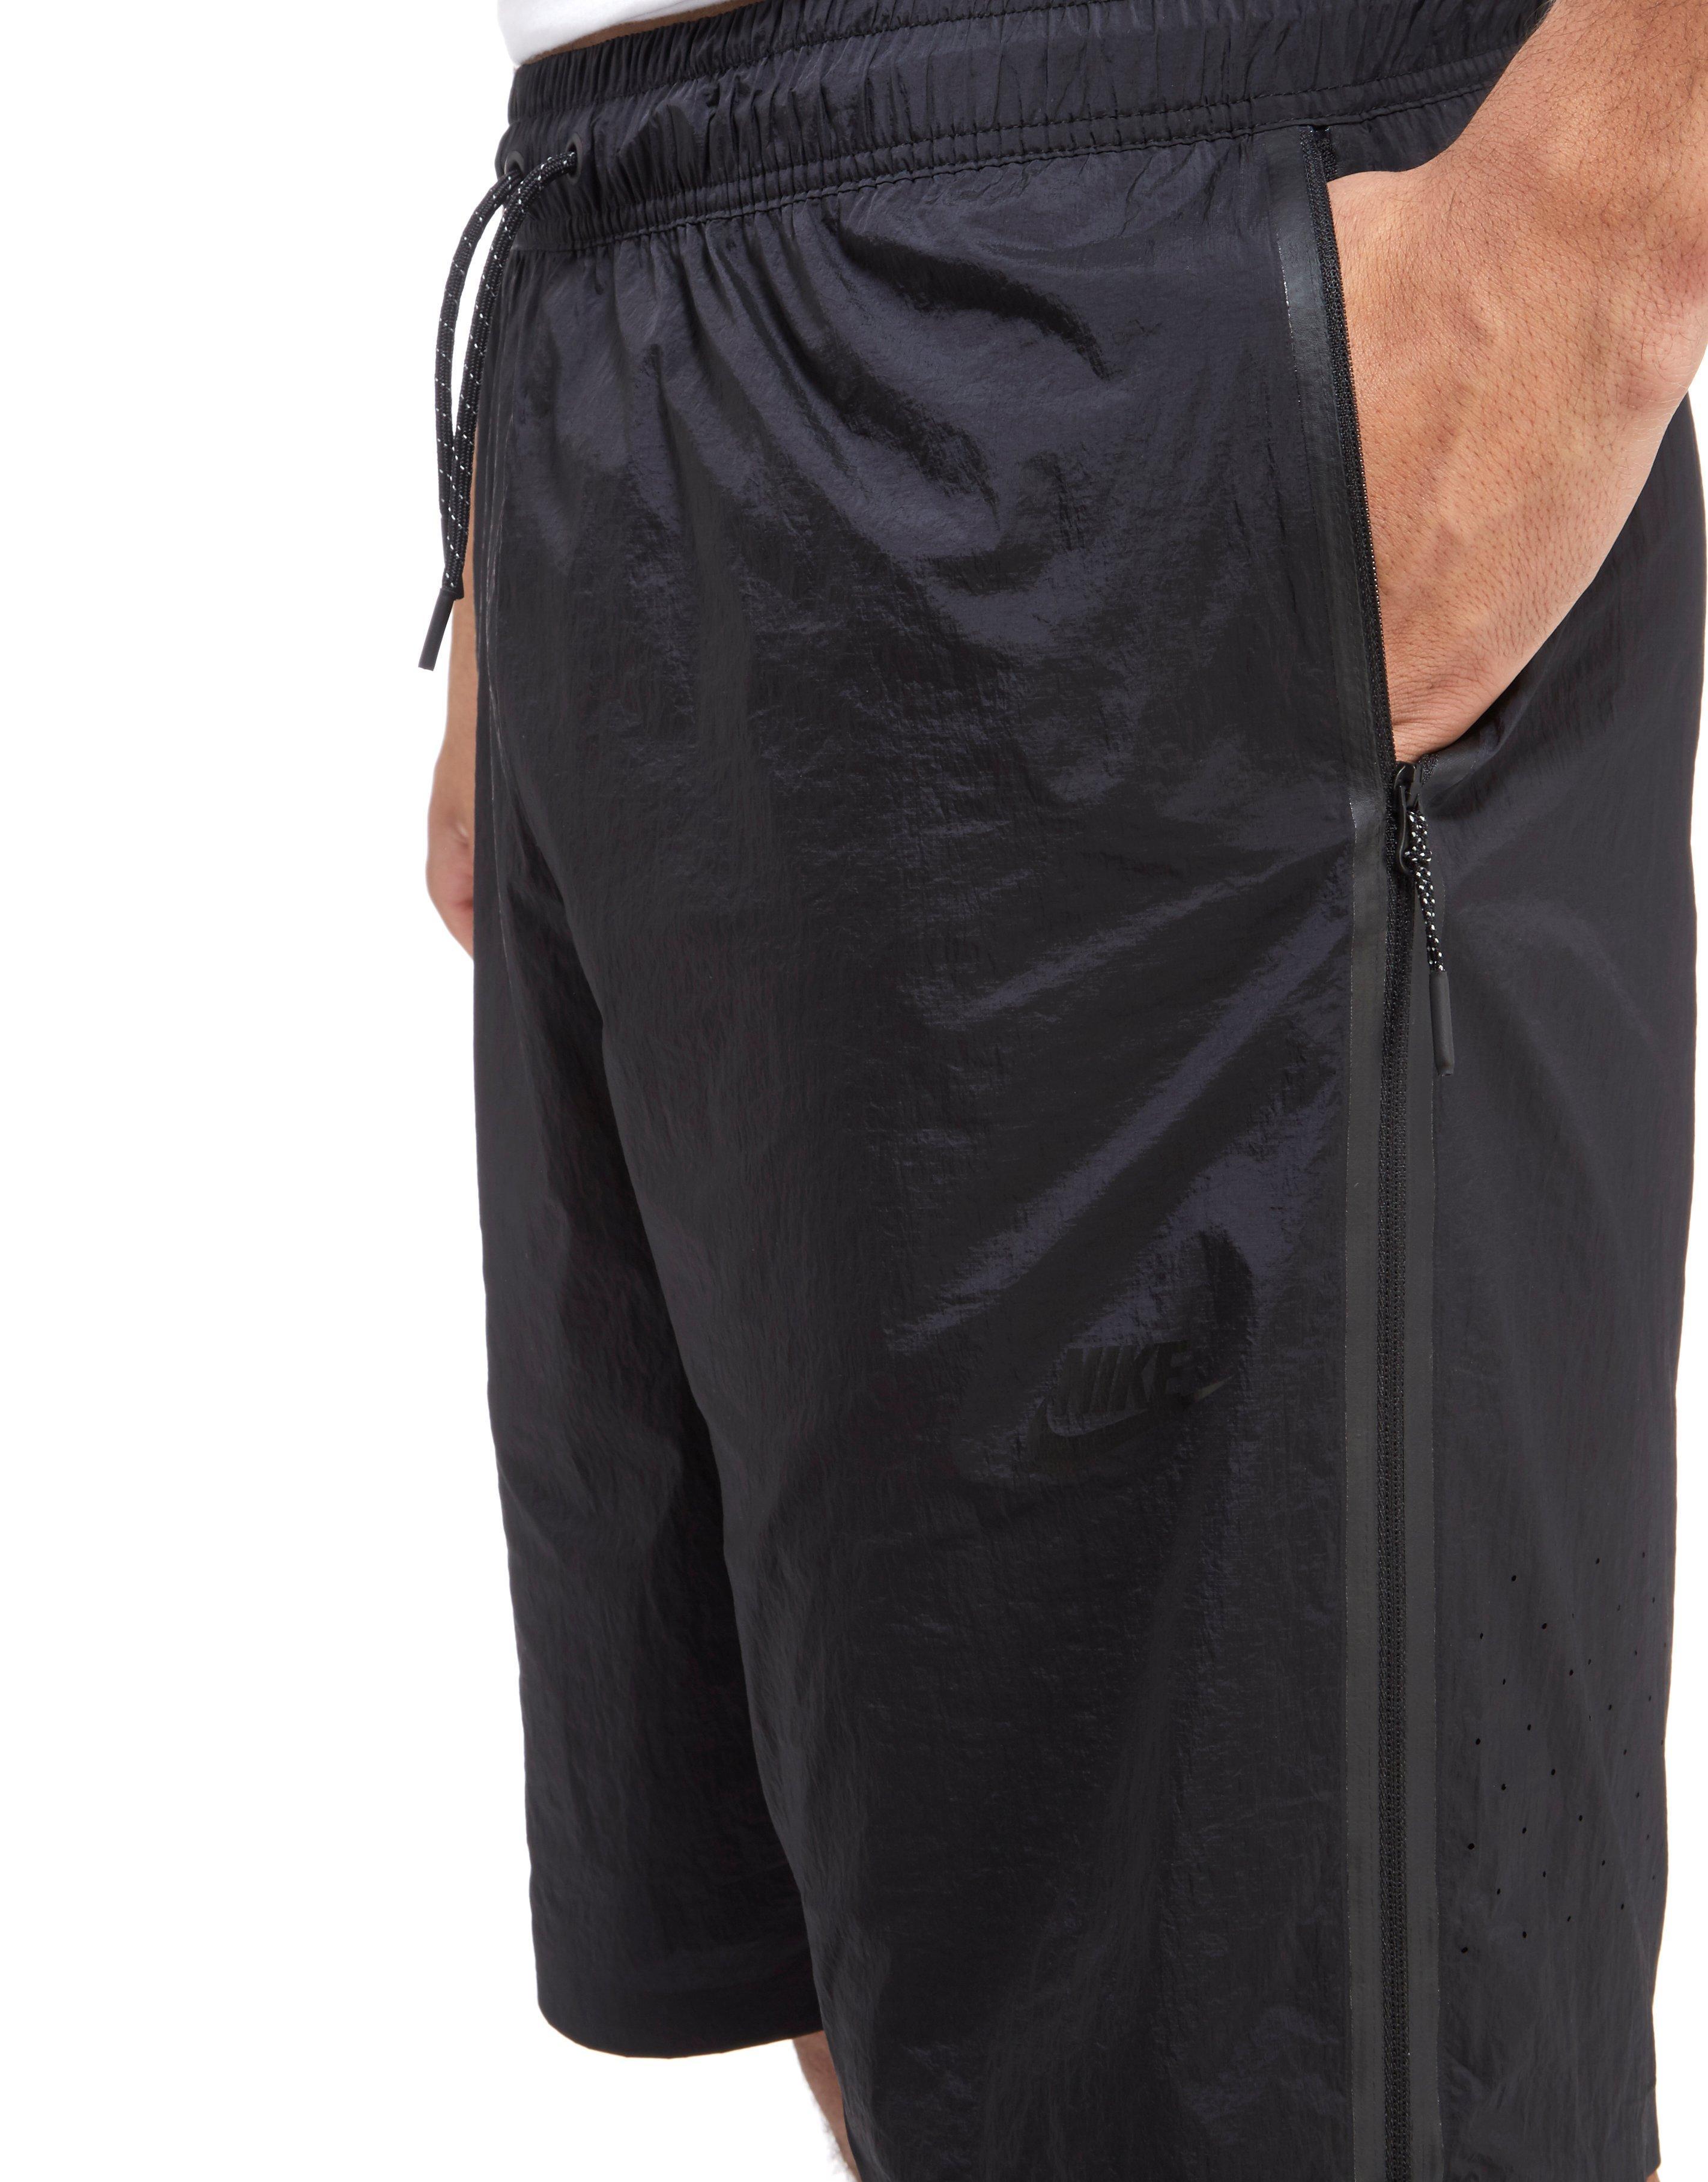 Nike Sportswear Tech Hypermesh Shorts in Black for Men - Lyst